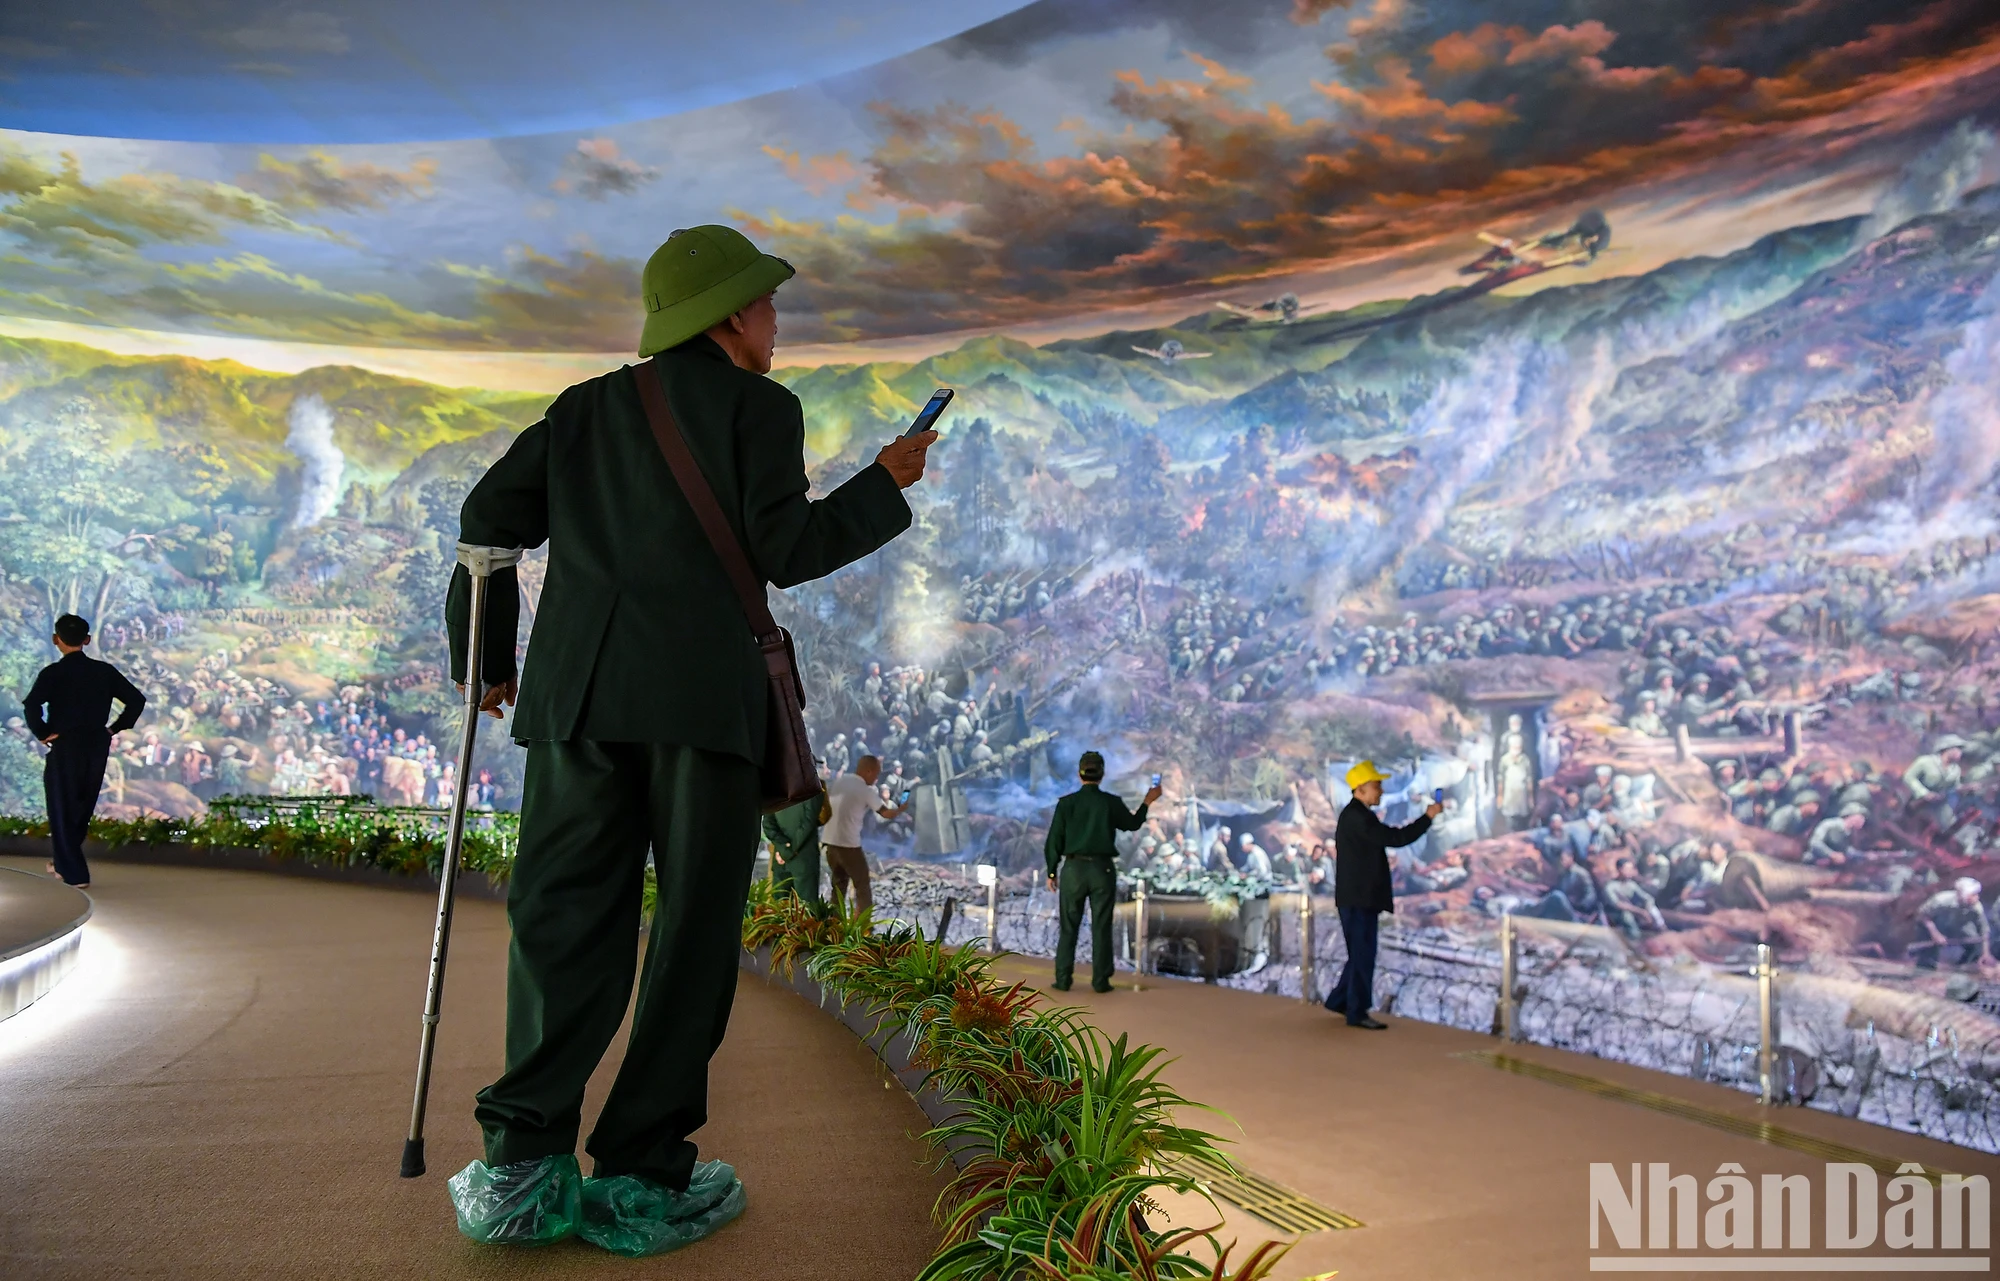 [Ảnh] Cựu chiến binh, du khách xúc động xem tranh Panorama tái hiện Chiến dịch Điện Biên Phủ ảnh 16